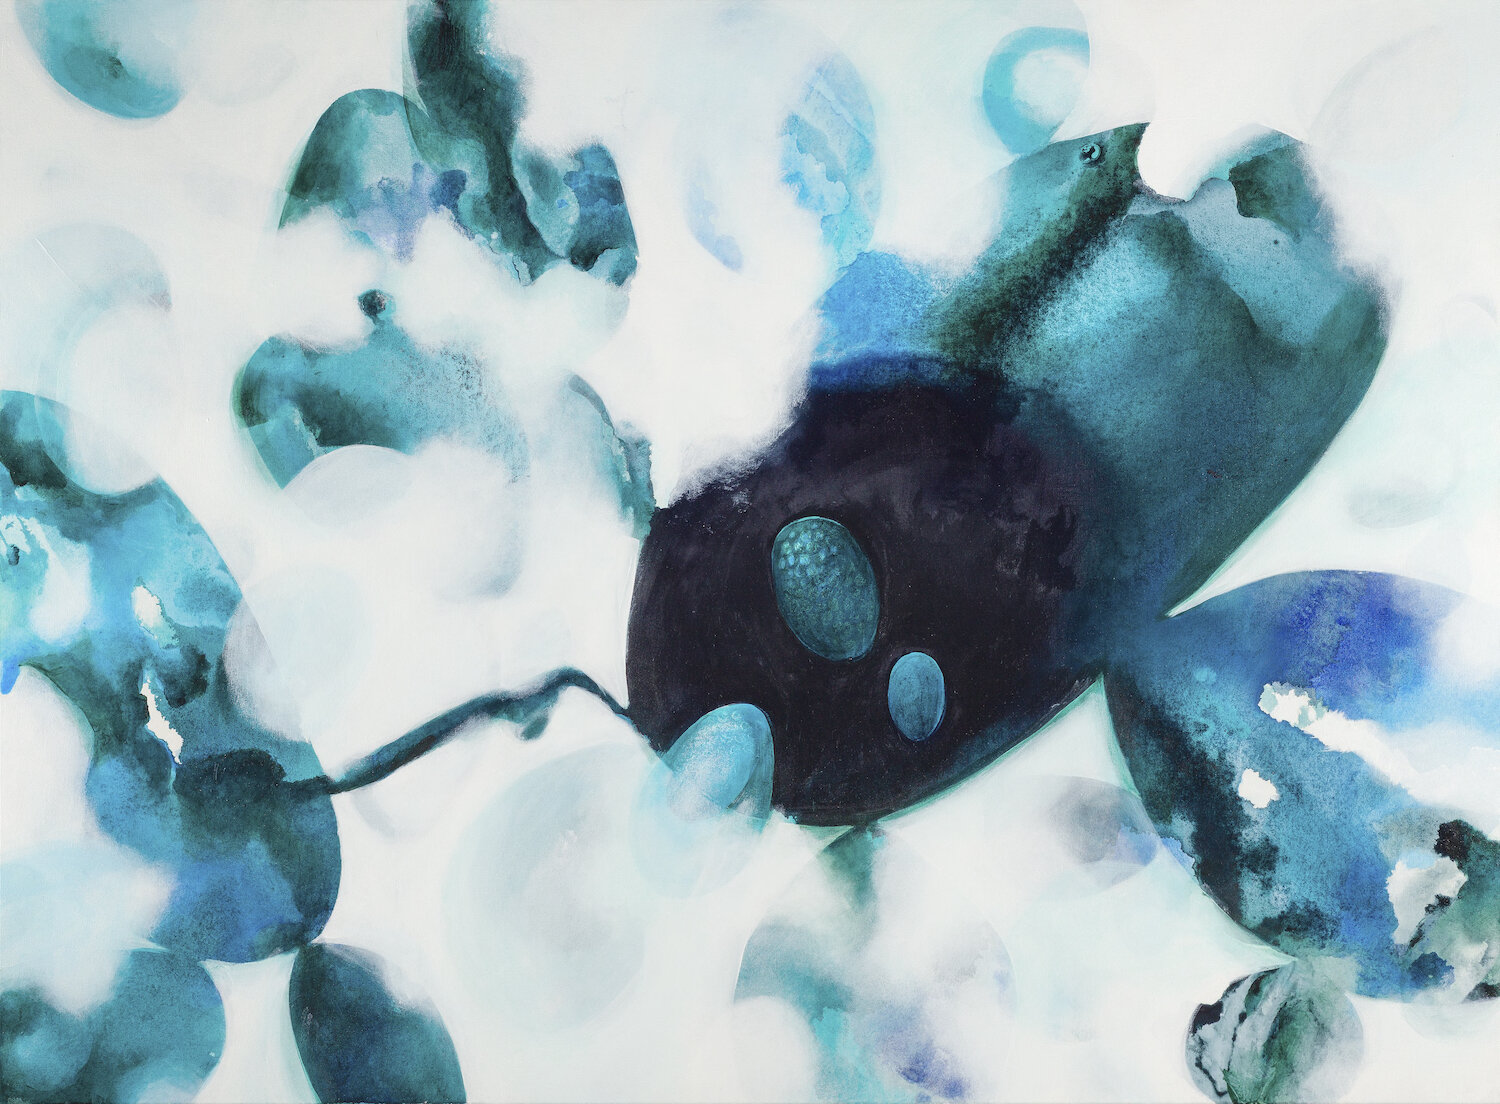 "ocean of noise", acrylic on canvas, 40"x60"